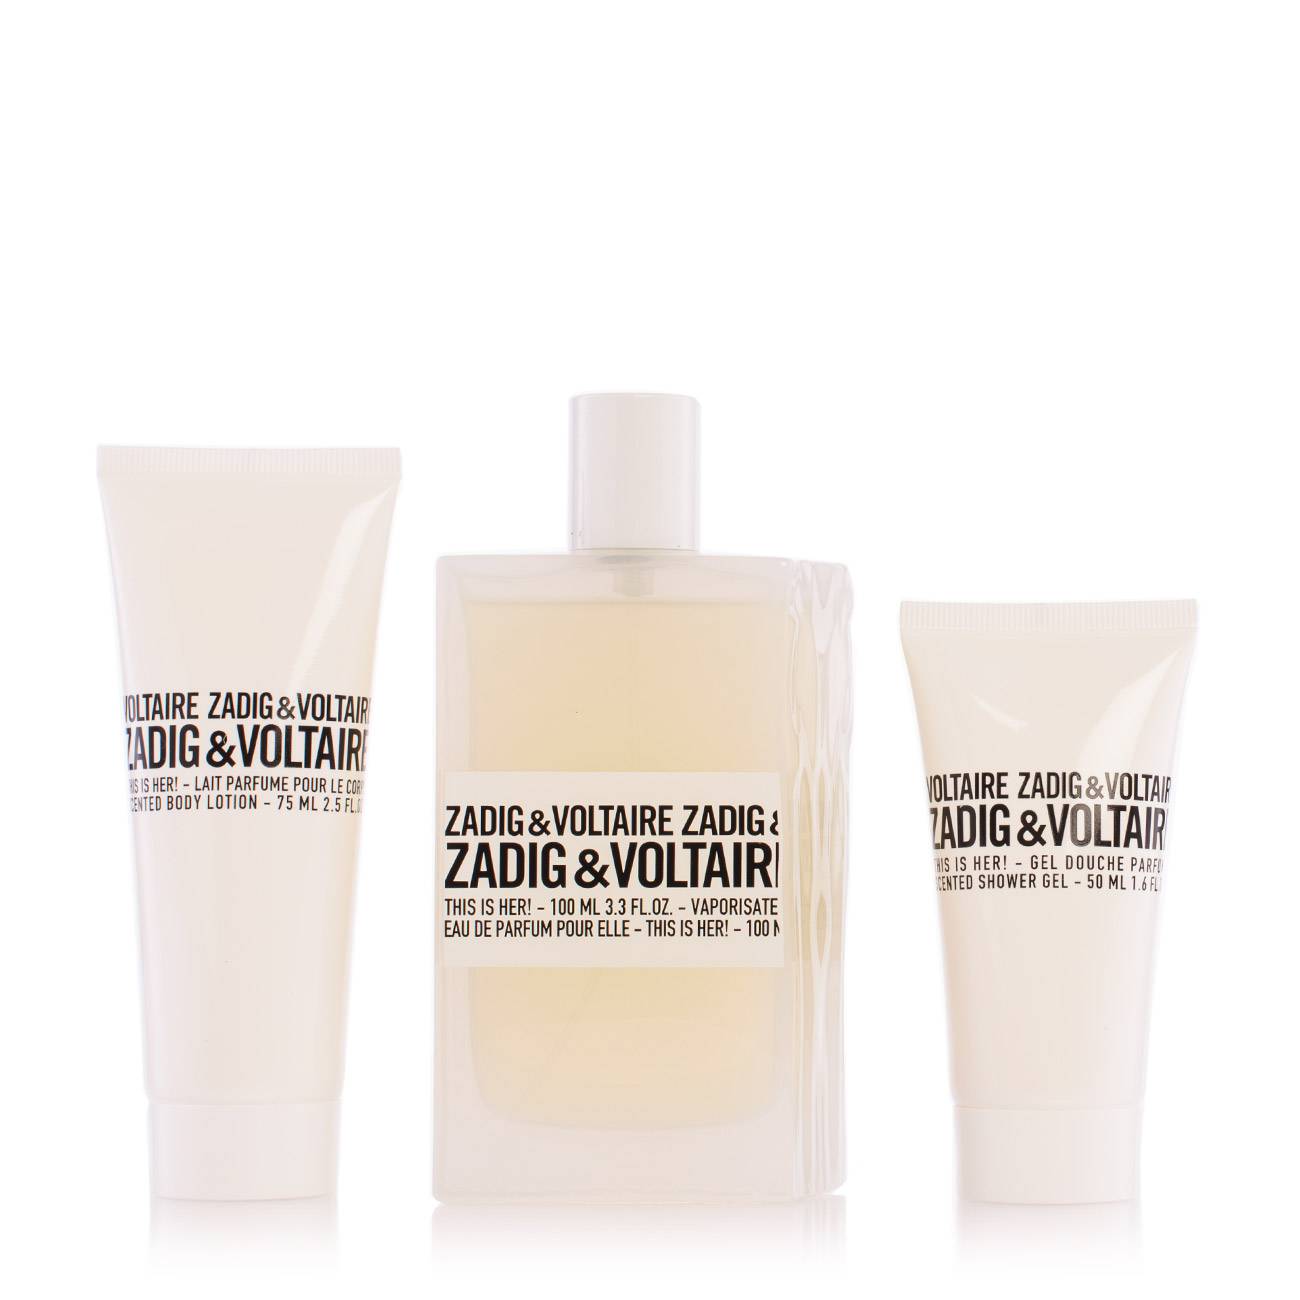 Set parfumuri Zadig & Voltaire THIS IS HER! 225ml cu comanda online